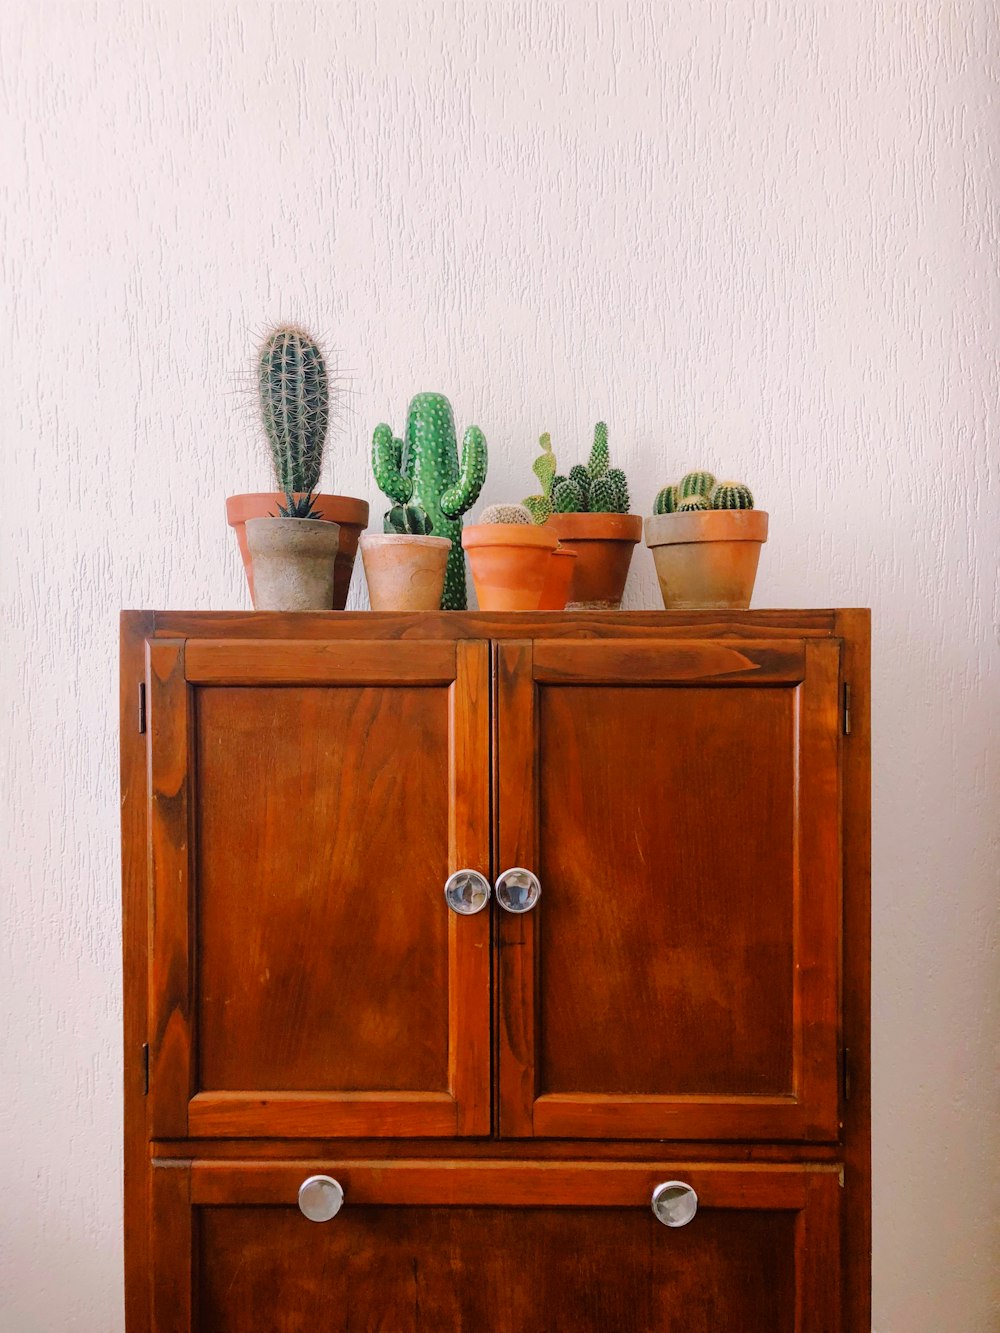 pianta di cactus verde su armadio di legno marrone